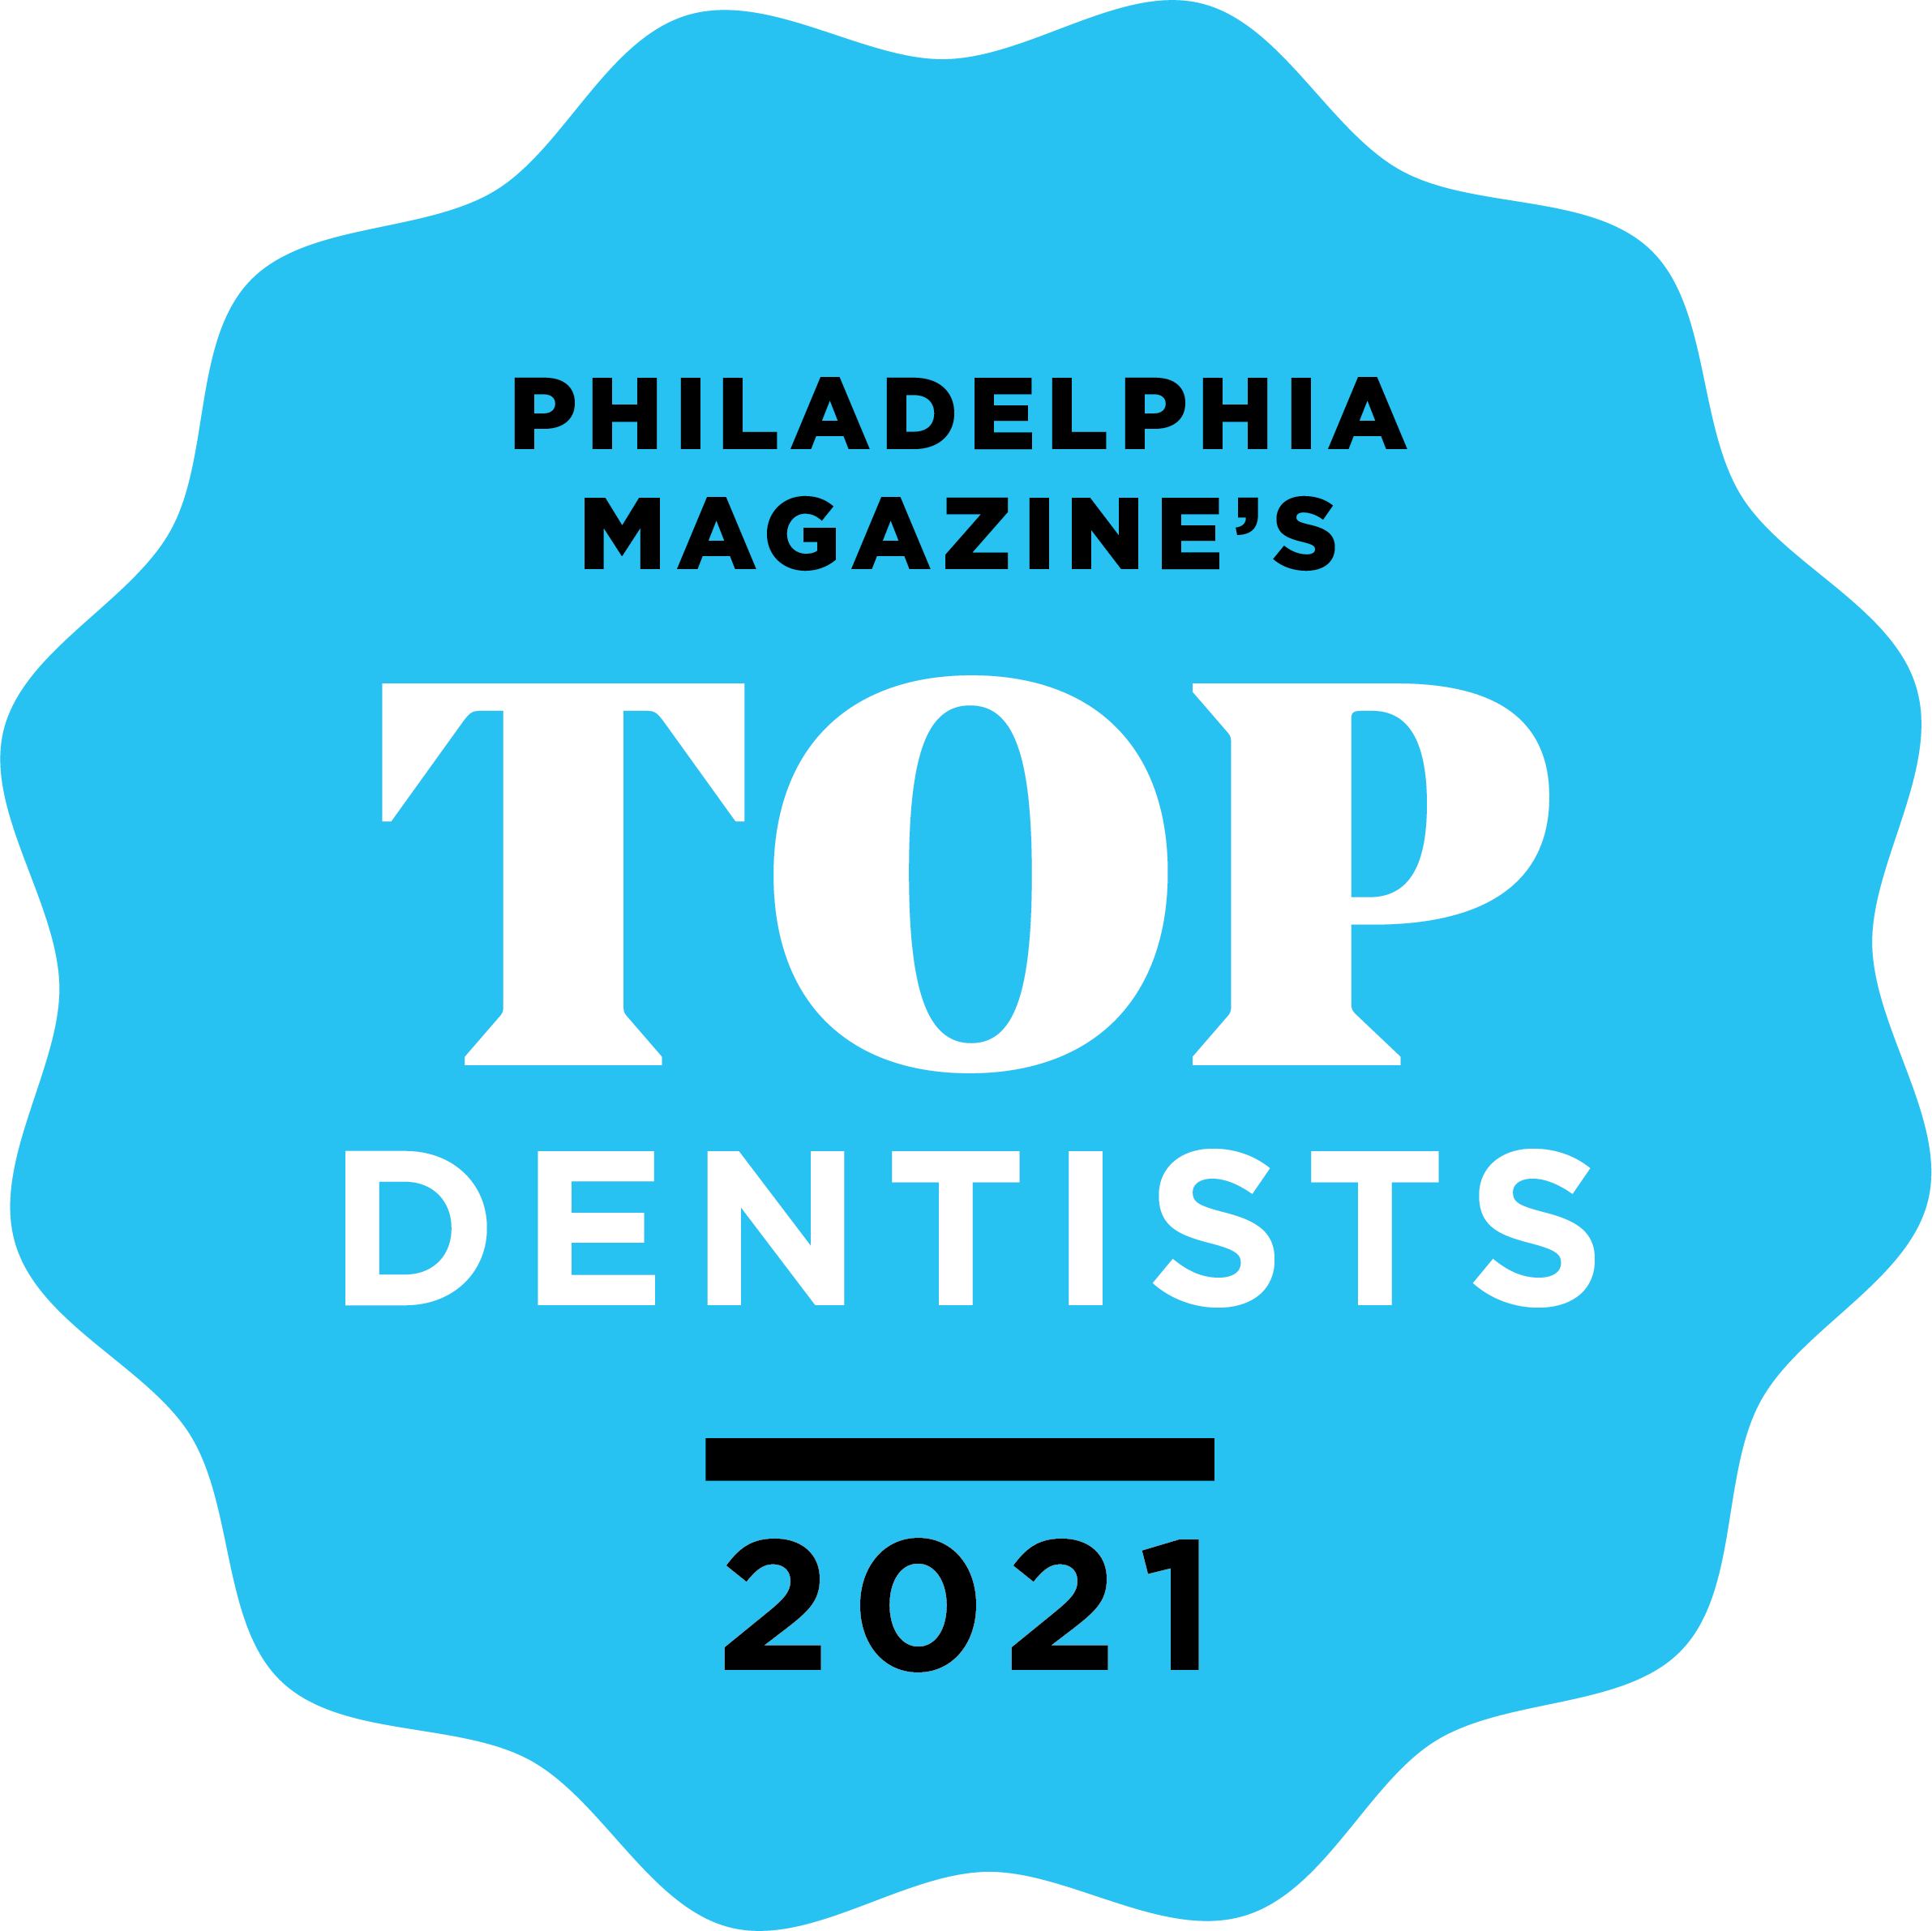 2021 Top Dentists in Philadelphia Award